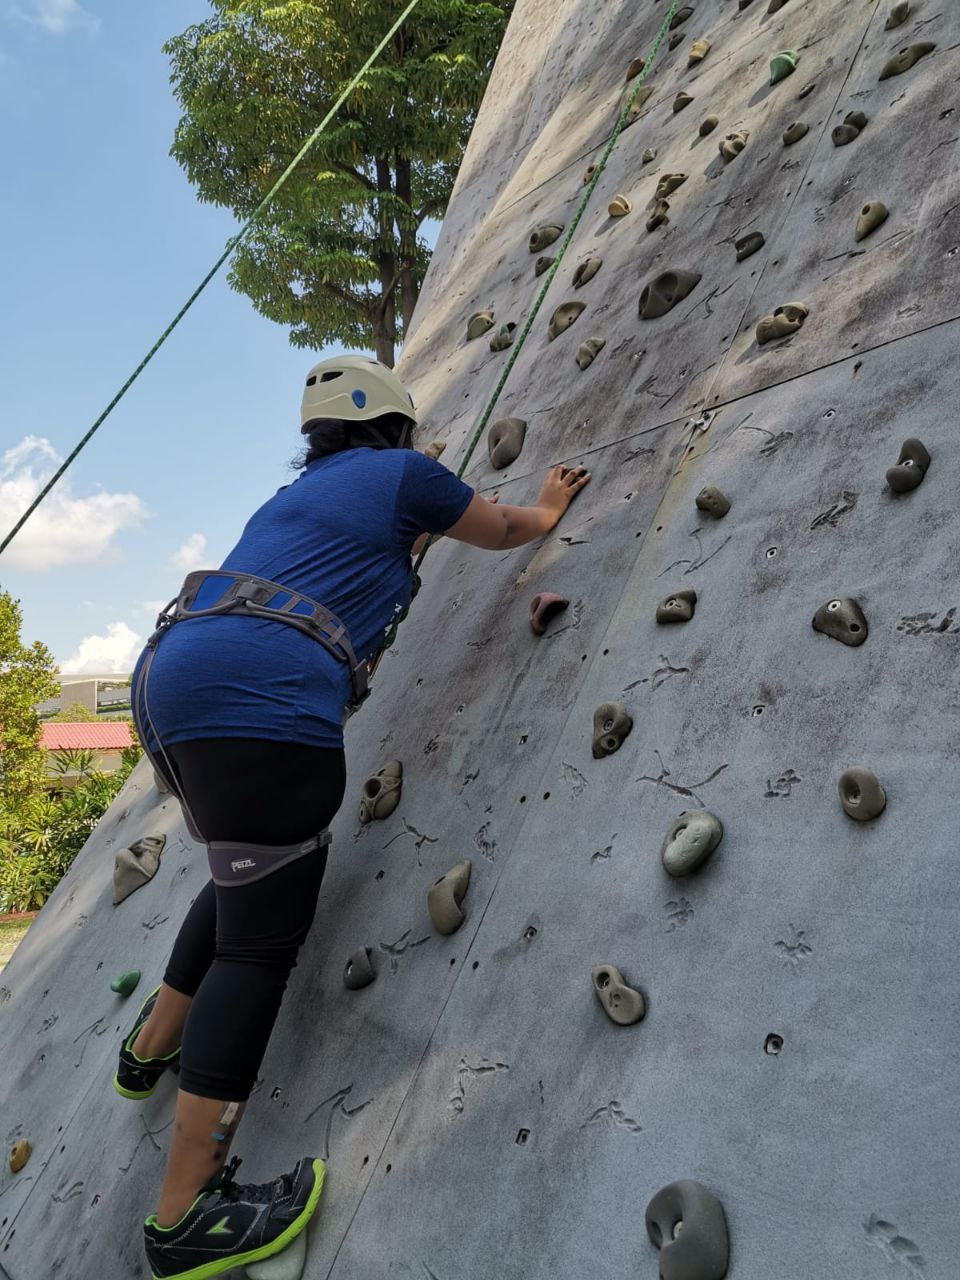 Anusha rock climbing